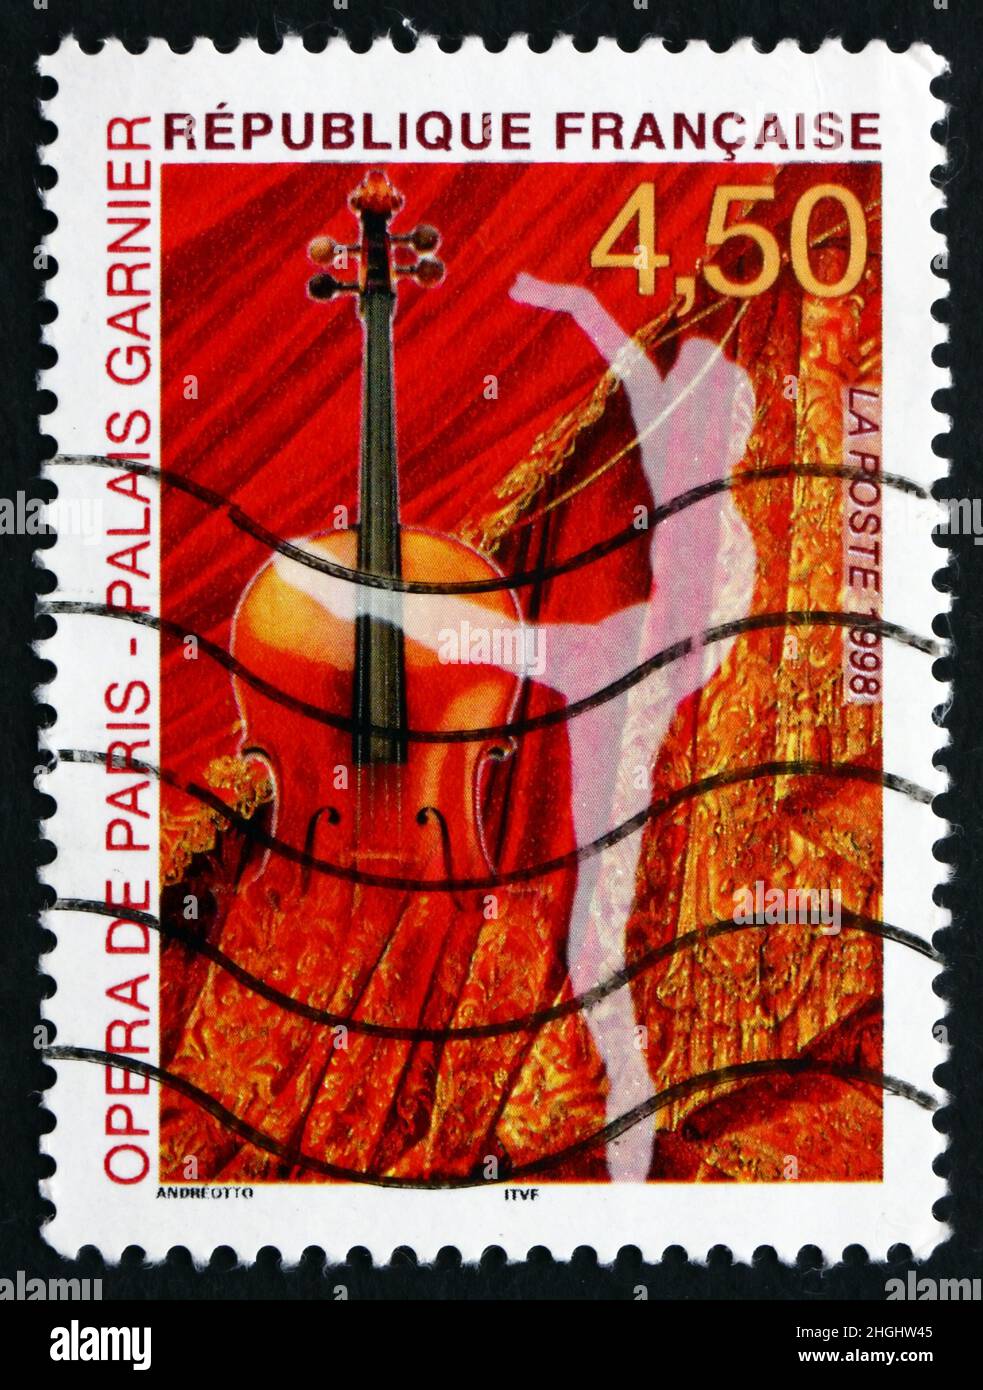 FRANCE - VERS 1998 : un timbre imprimé en France montre le Palais Garnier, berceau de l'Opéra de Paris, vers 1998 Banque D'Images